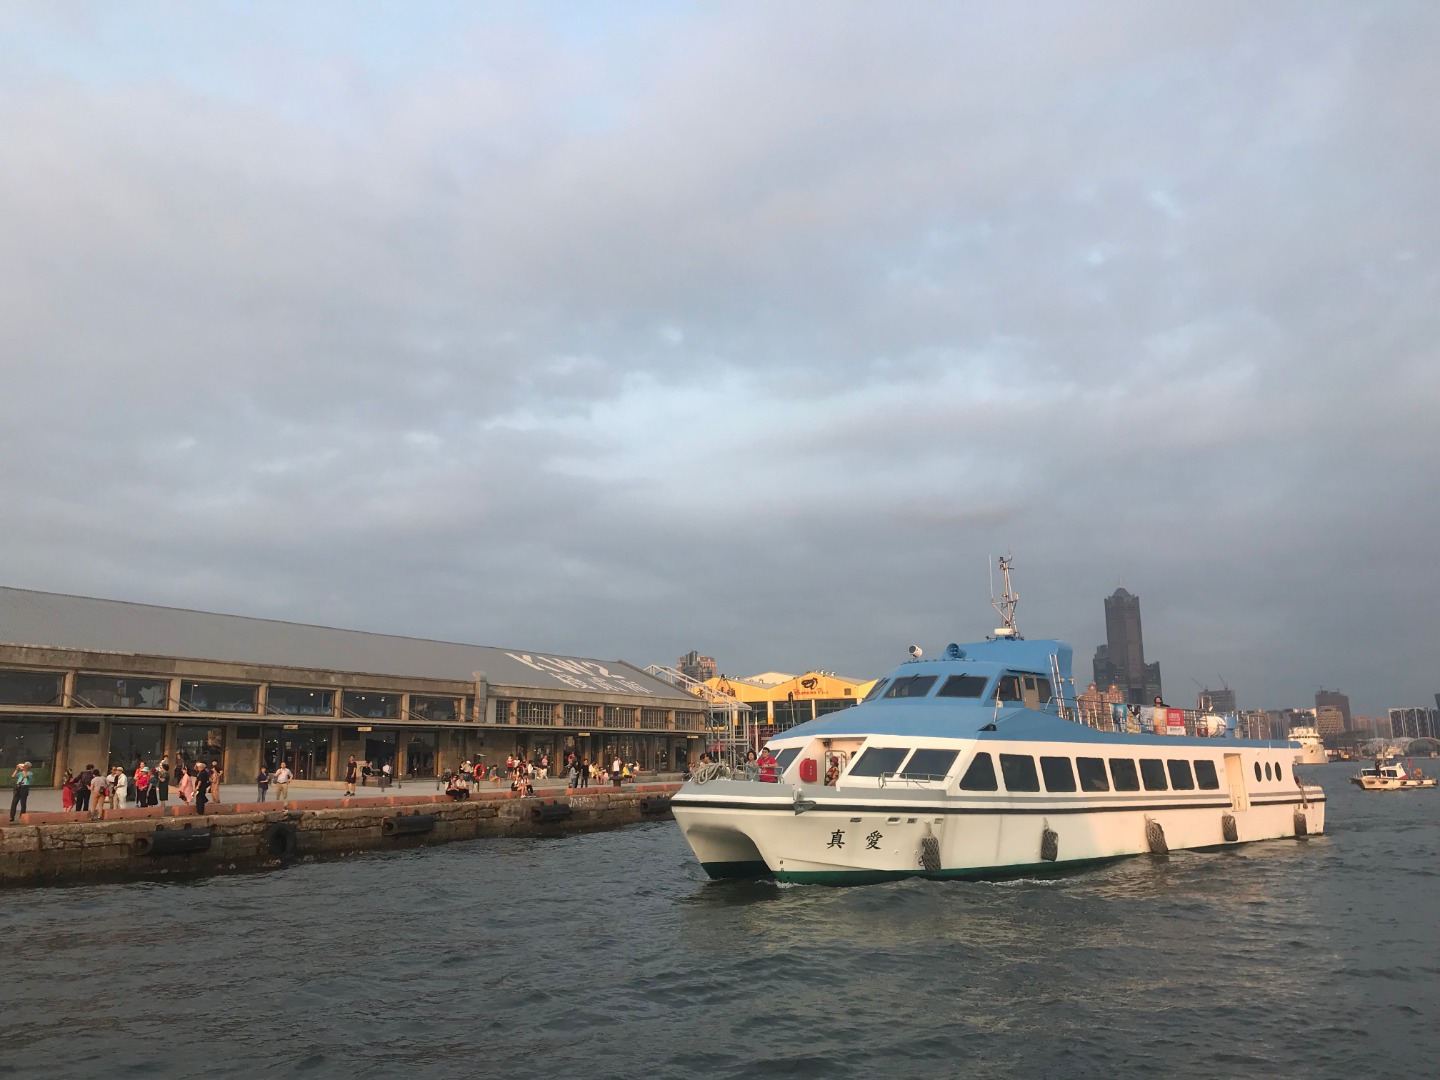 高雄-金棧遊港夕陽線| 遊船體驗